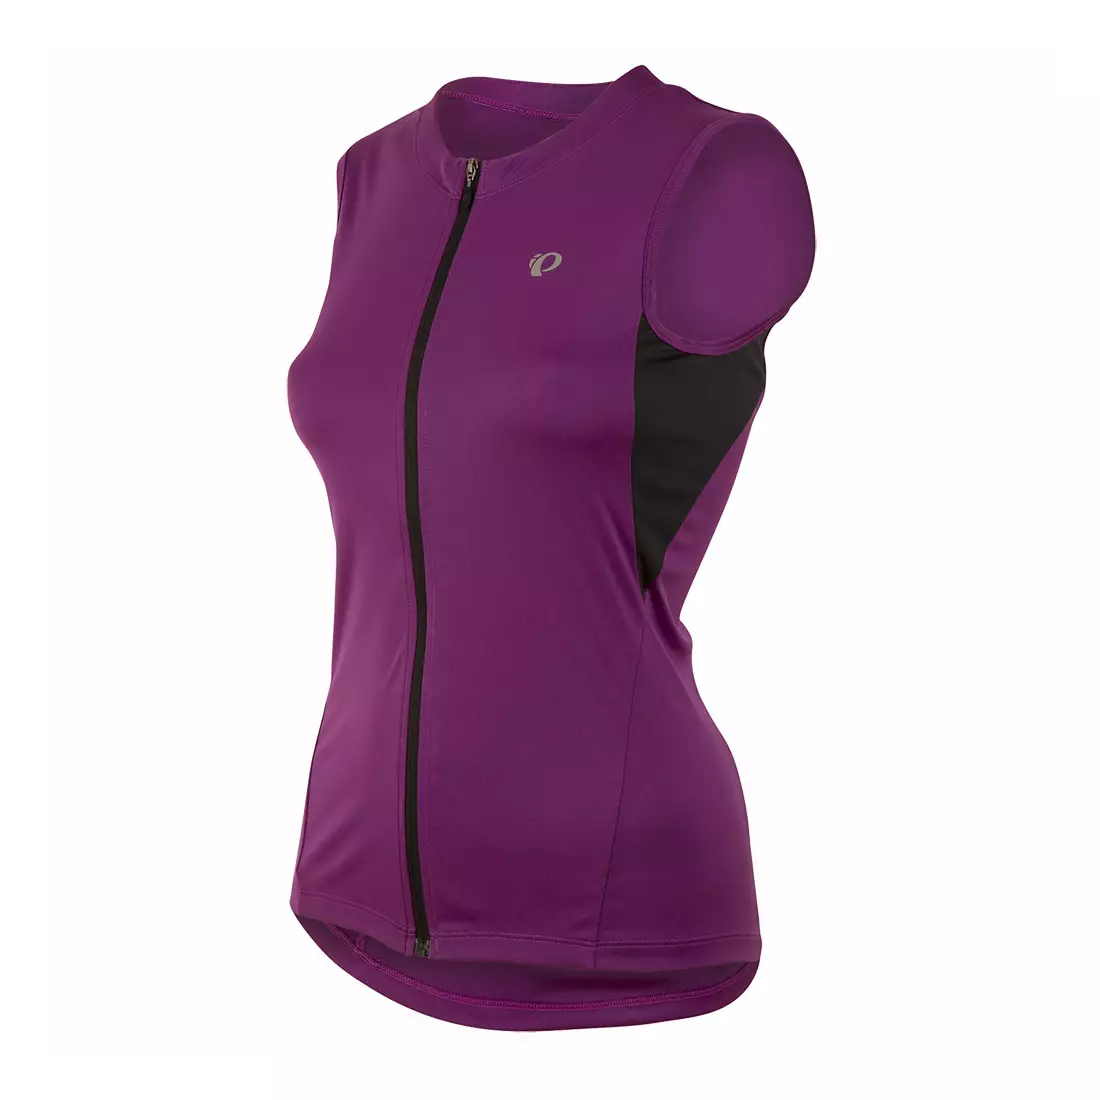 PEARL IZUMI SELECT women's sleeveless cycling jersey 11221504-2PL purple